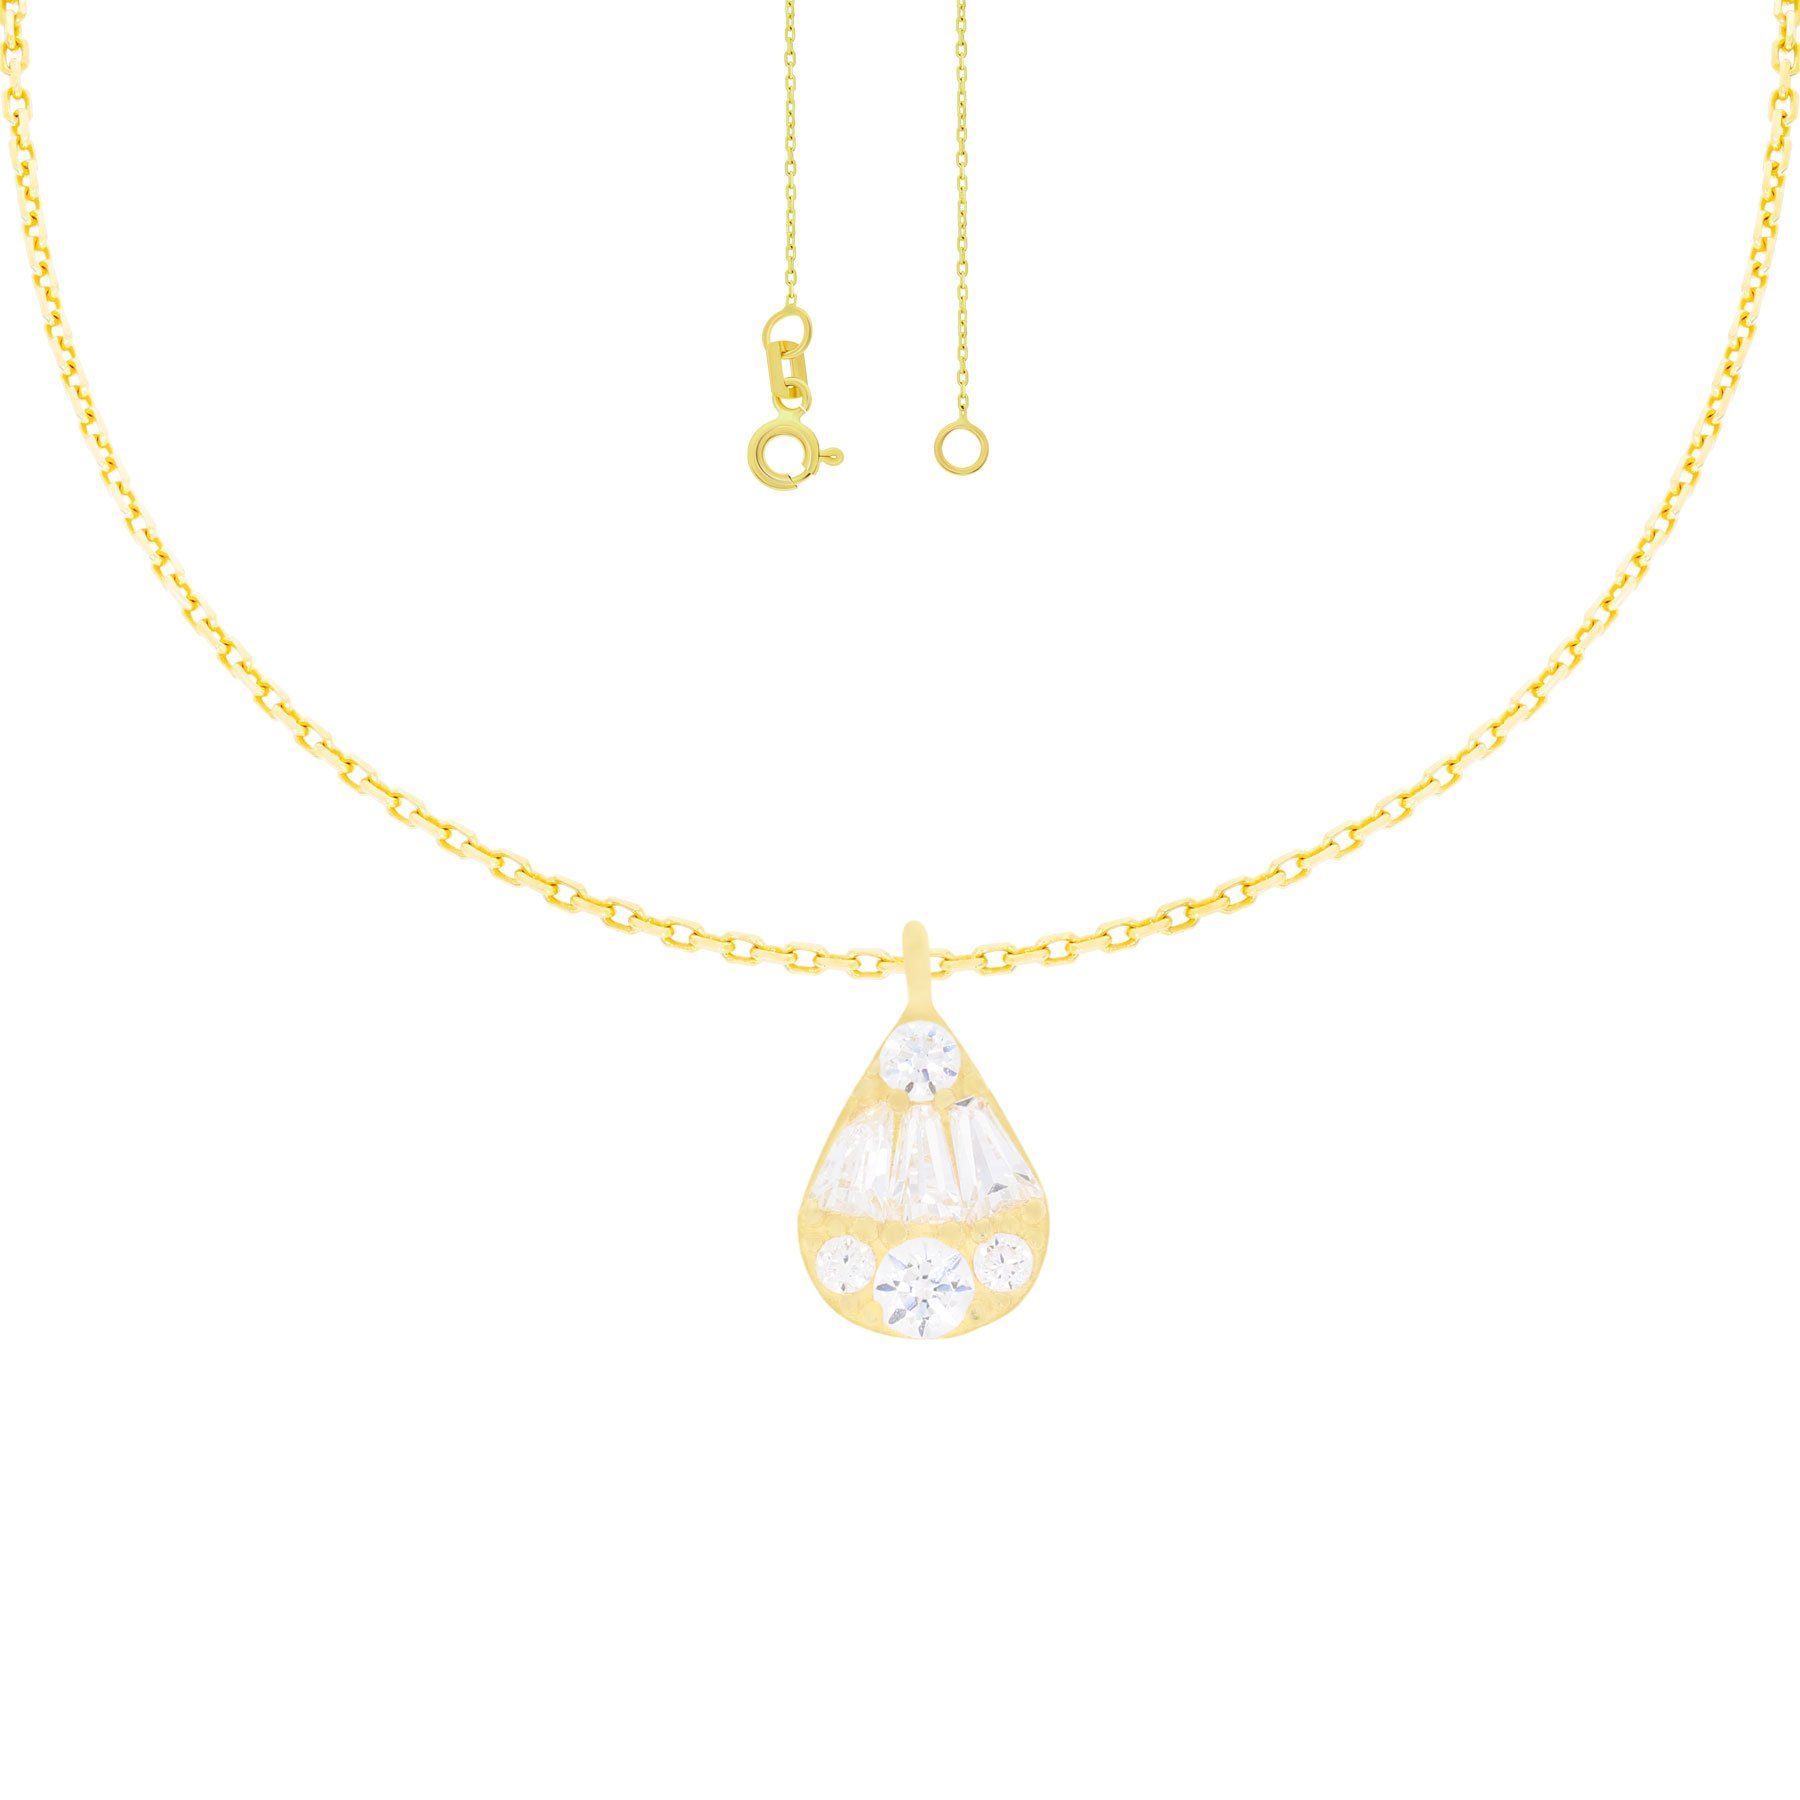 Damen Schmuck Stella-Jewellery Kette mit Anhänger 585er Gelbgold Collierkette mit Tropfen Zirkonia (inkl. Etui), Collierkette mi